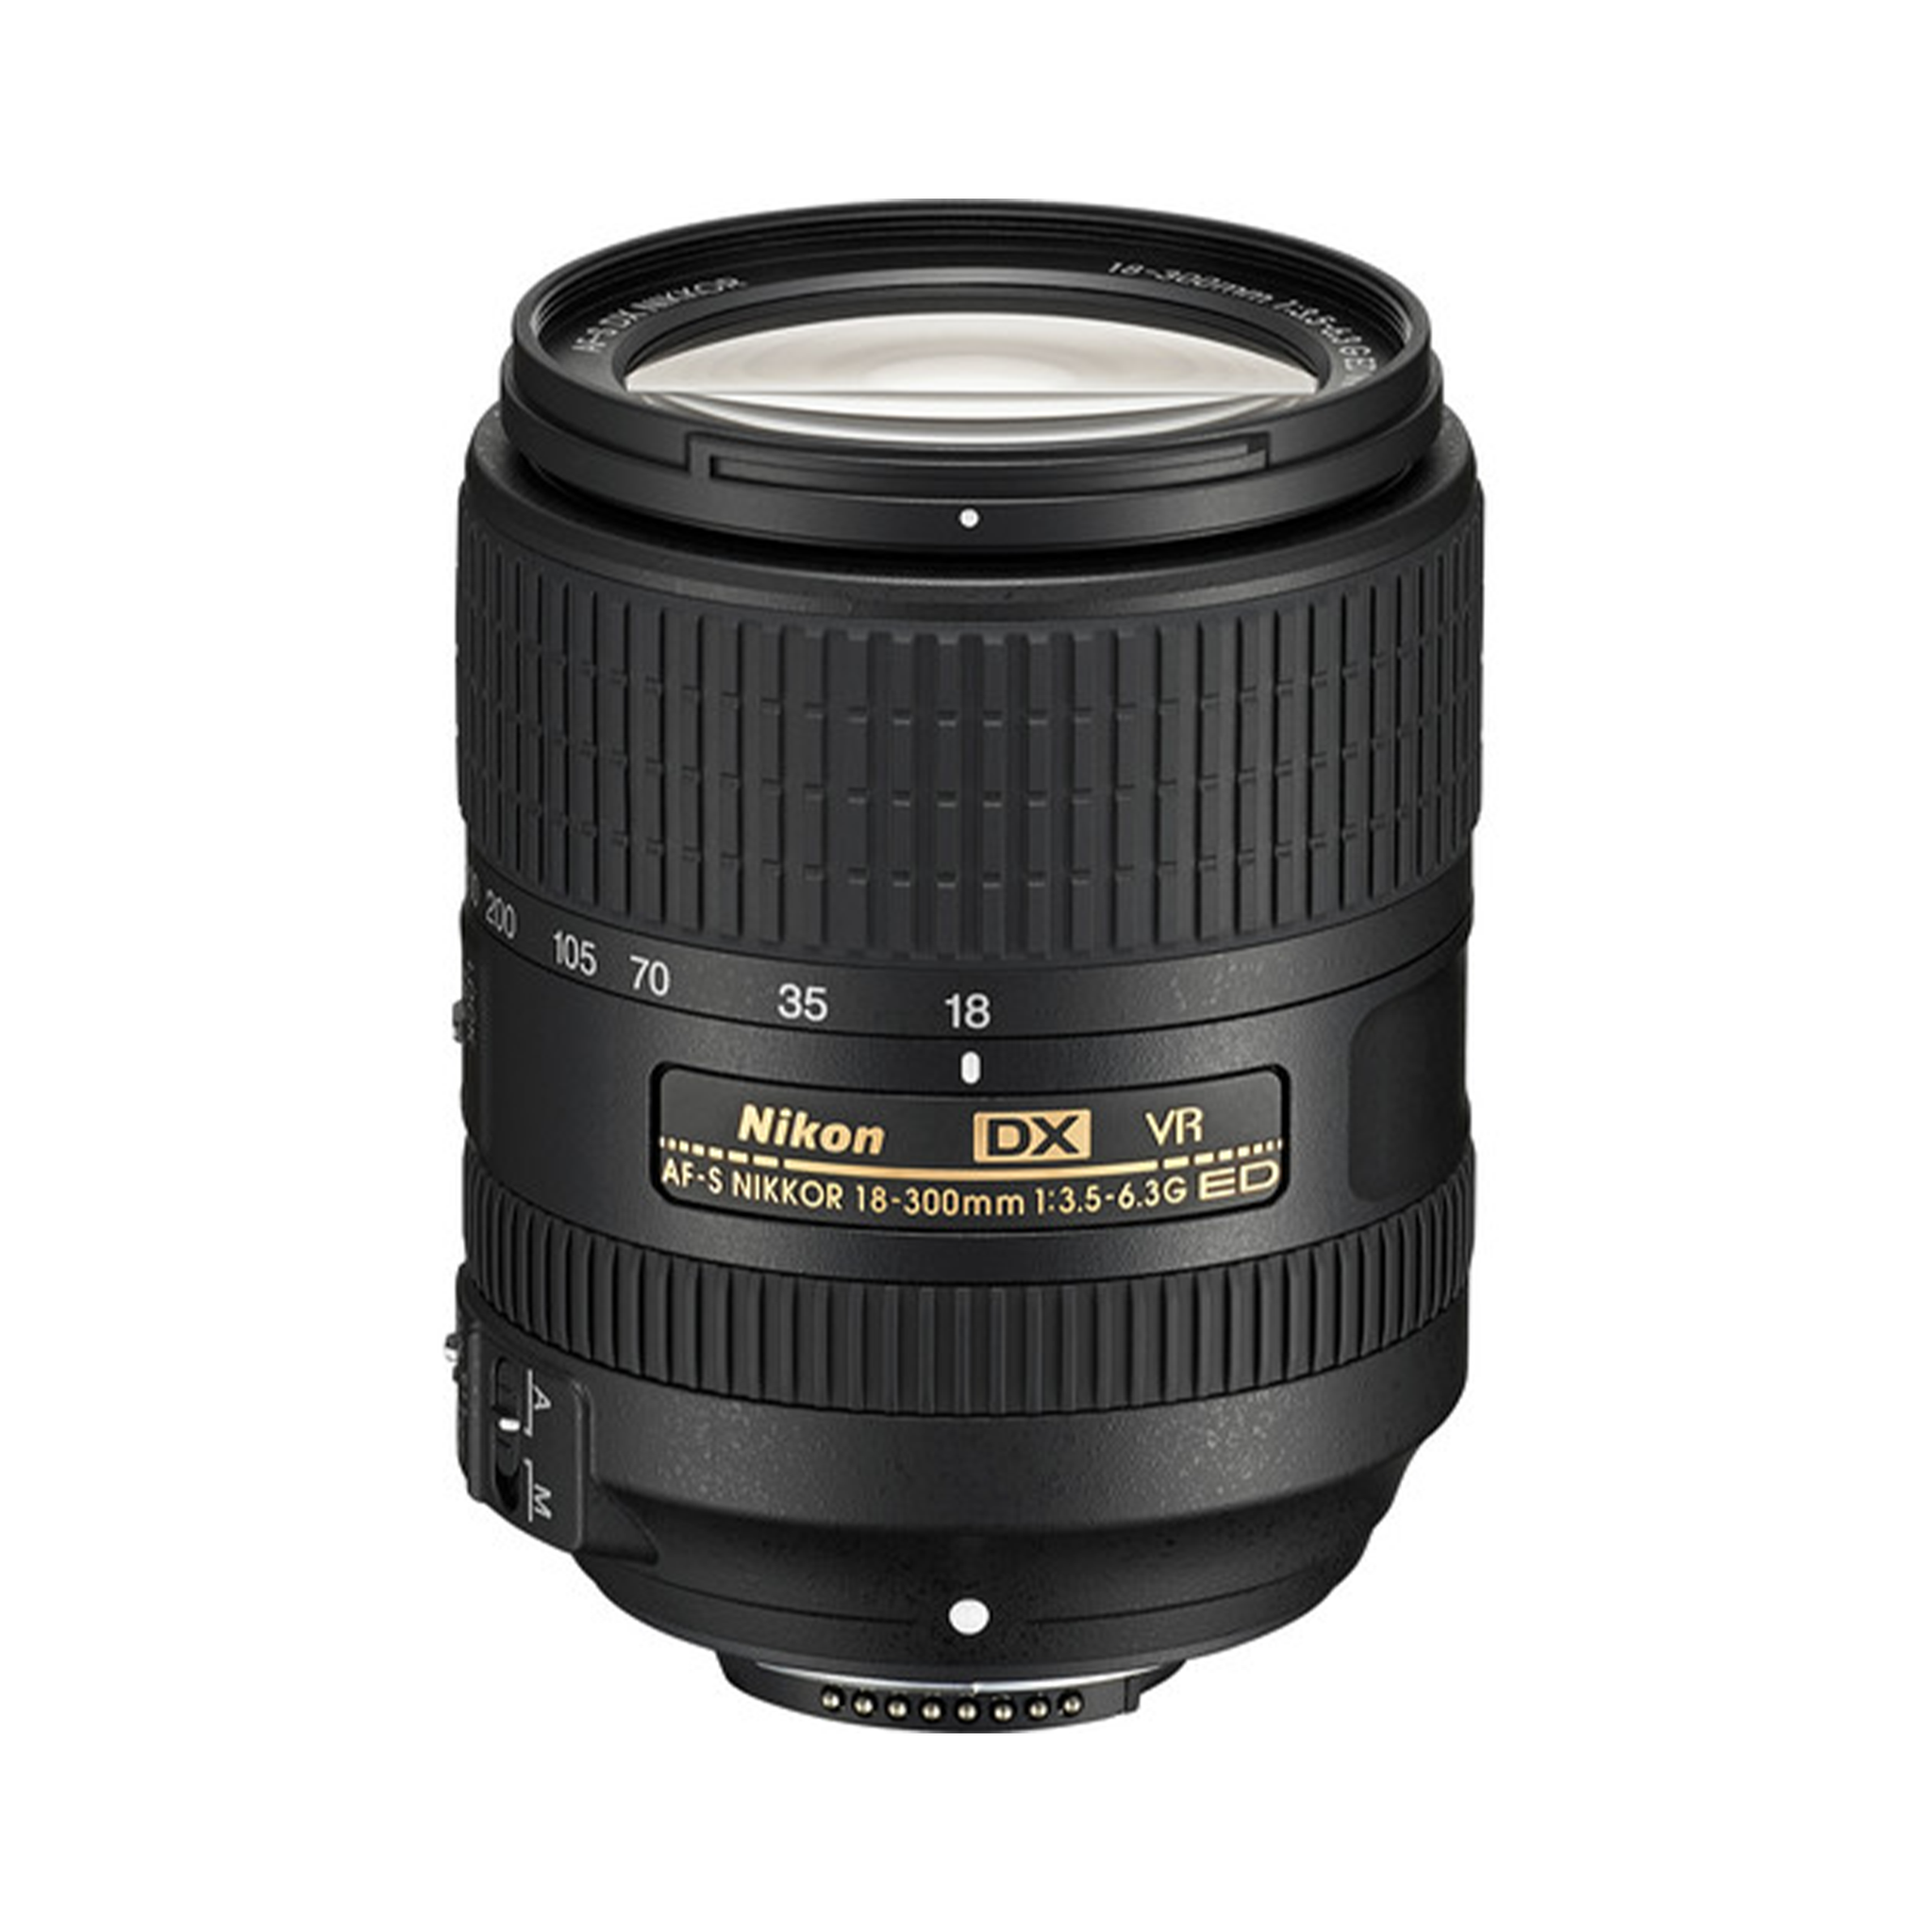 Nikon AF-S DX NIKKOR 18-300mm f/3.5-6.3G ED VR Lens-Camera Lenses-futuromic